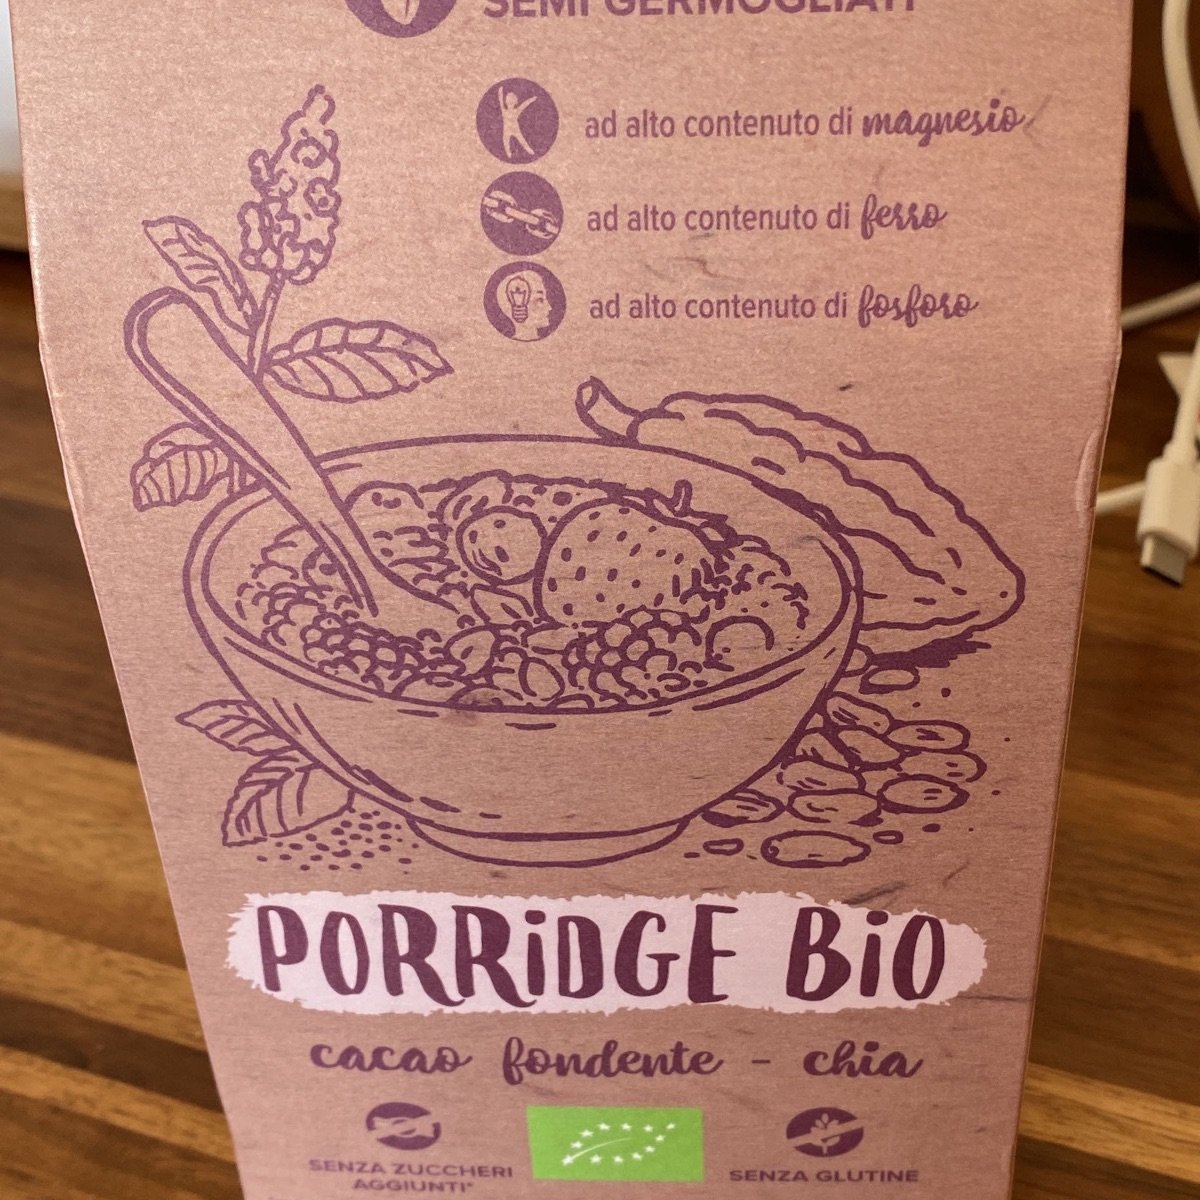 Porridge Bio Cacao Fondente Chia di Ambrosiae 